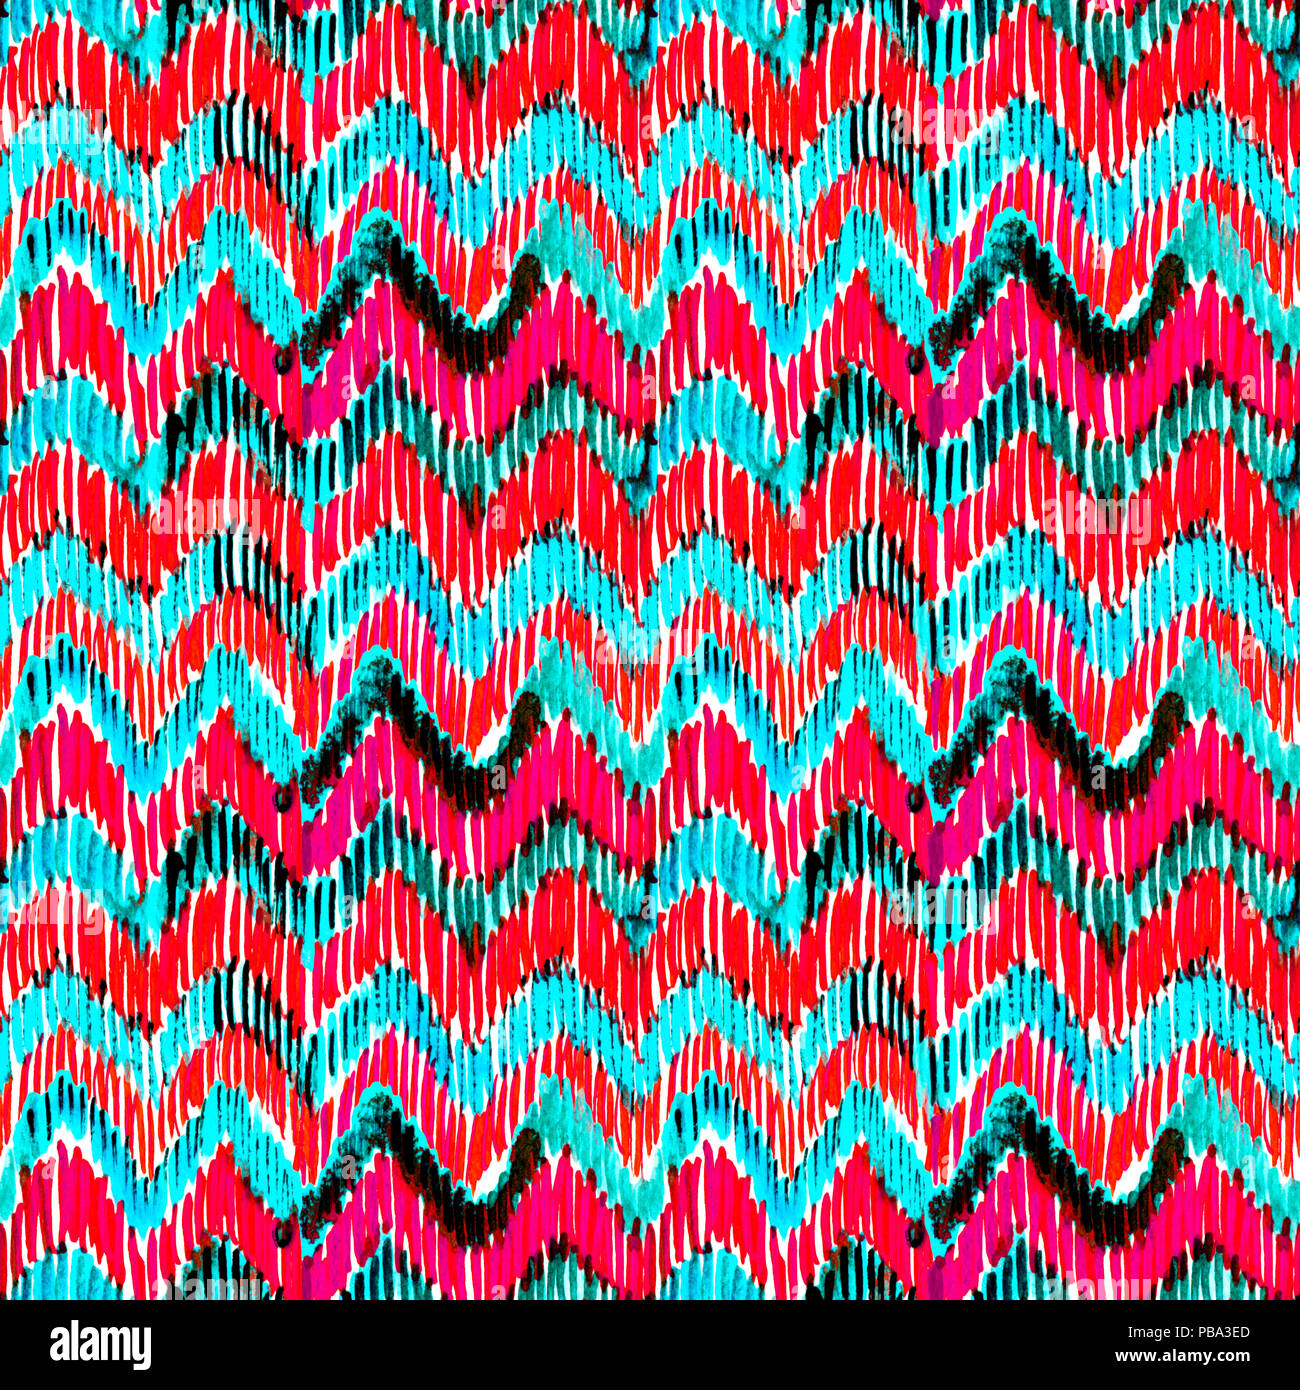 Aquarelle animée d'ikat turquoise et rose. motif transparent Motif tribal à la mode dans le style aquarelle. Plume de paon pour tissu, textile, céramique Banque D'Images